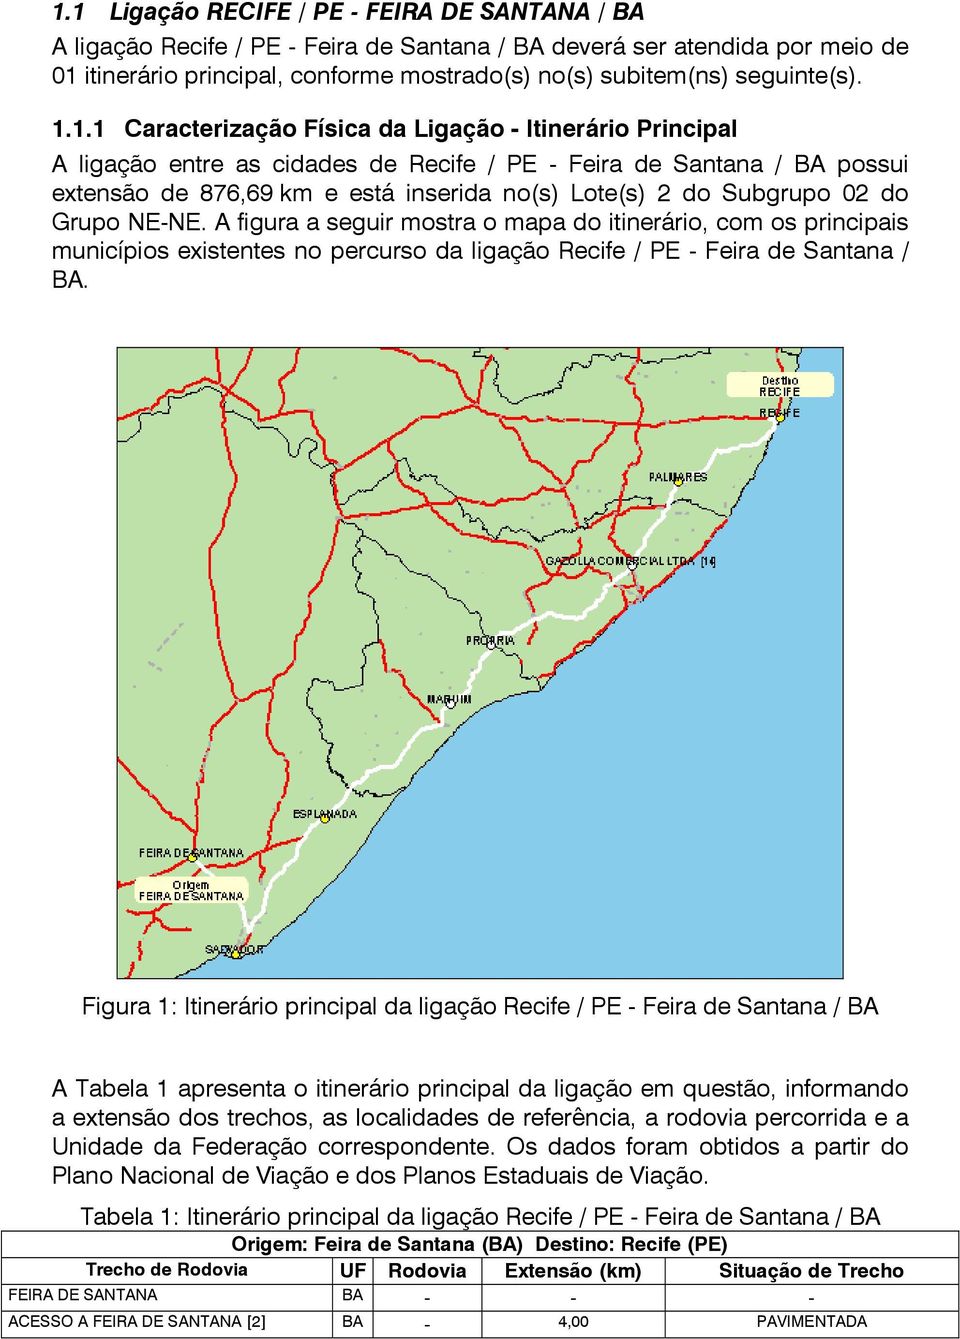 1.1 Caracterização Física da Ligação - Itinerário Principal A ligação entre as cidades de Recife / PE - Feira de Santana / BA possui extensão de 876,69 km e está inserida no(s) Lote(s) 2 do Subgrupo